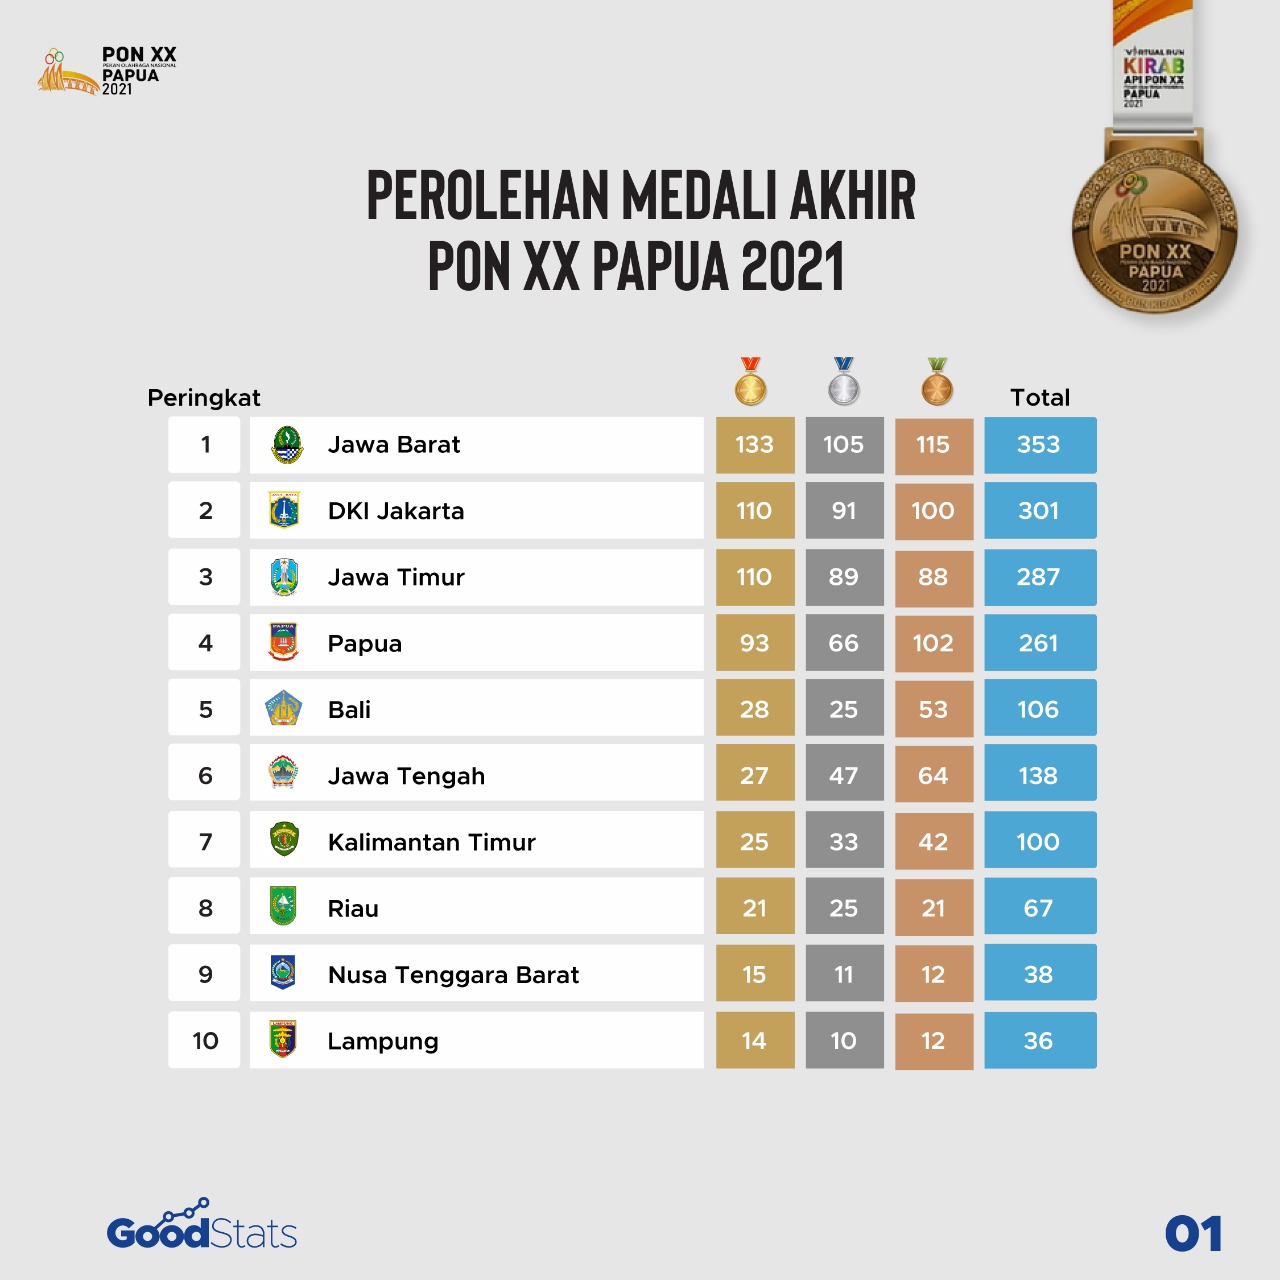 10 besar perolehan medali PON 2020, seperti biasa tiga besar masih diisi Jabar, DKI, dan Jatim. Sementara Papua melesat naik ke peringkat 4. | GoodStats